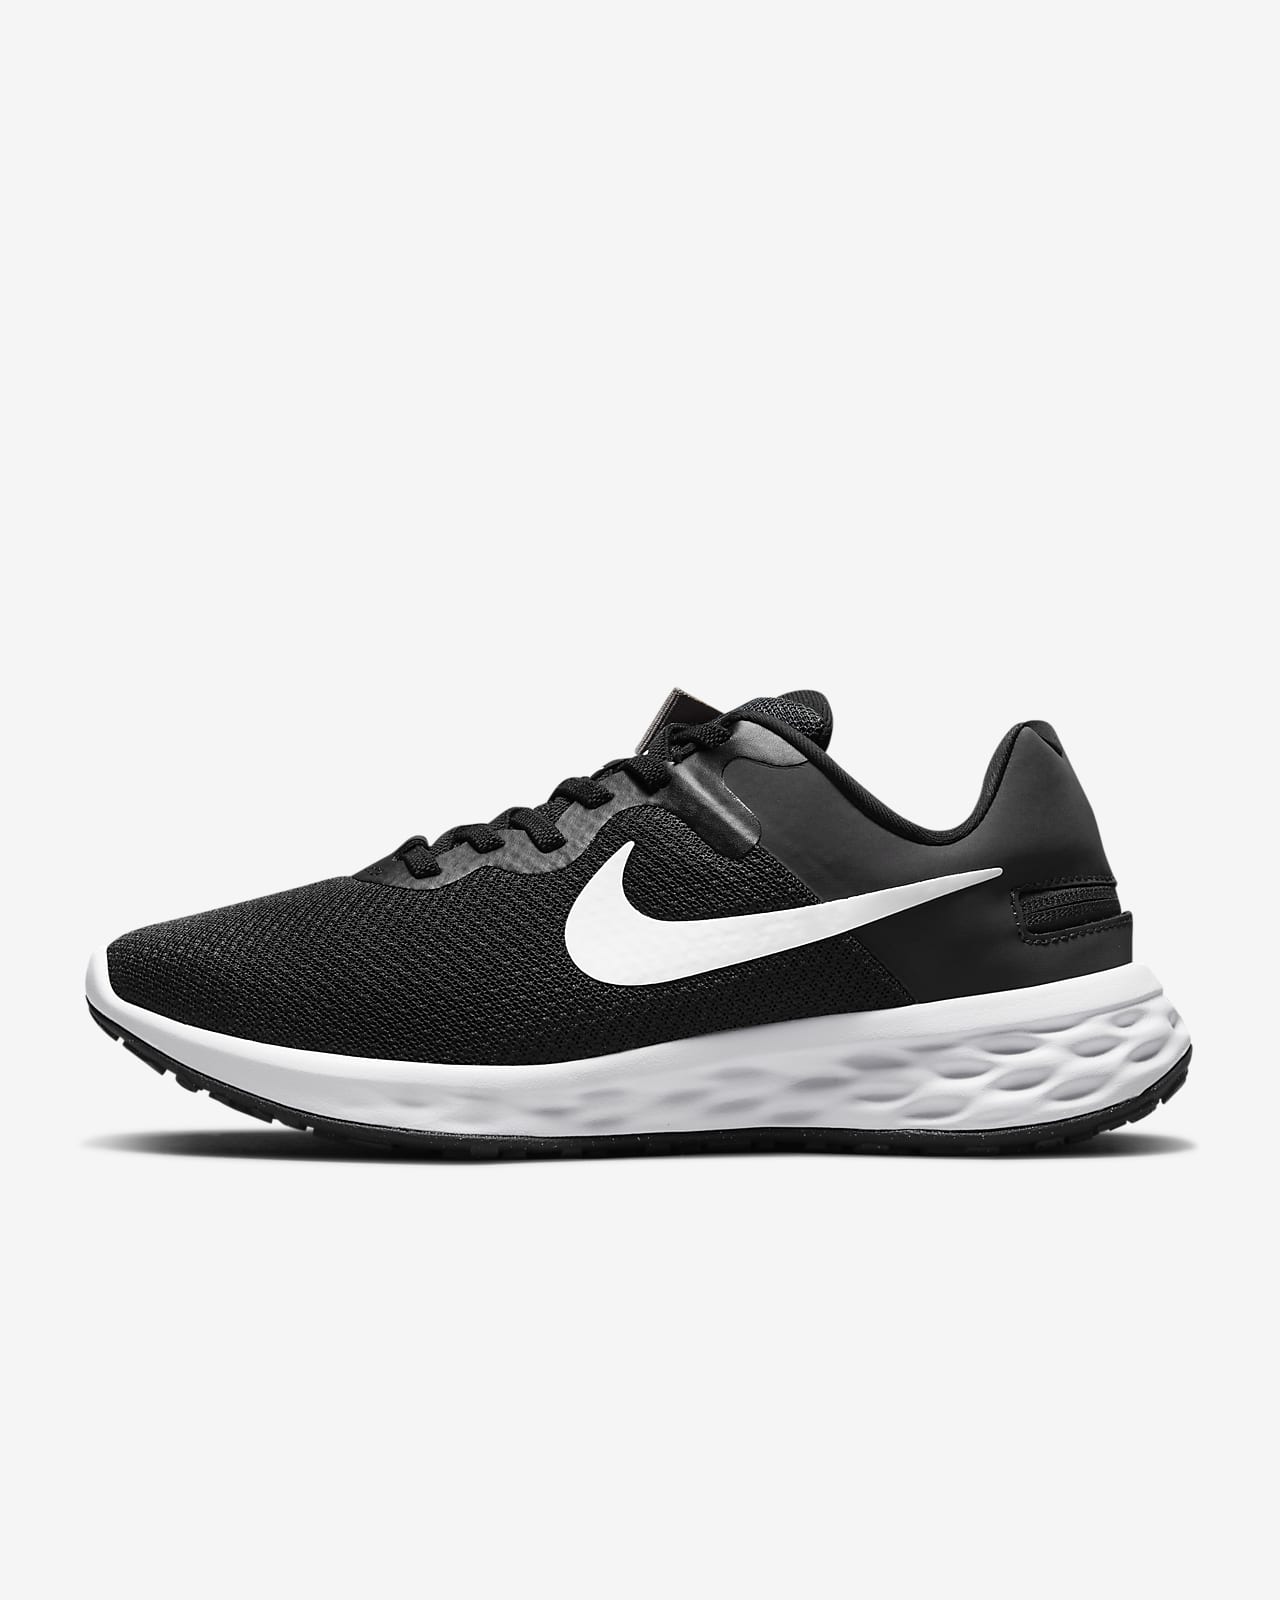 Γυναικείο παπούτσι για τρέξιμο σε δρόμο με εύκολη εφαρμογή/αφαίρεση Nike Revolution 6 FlyEase Next Nature